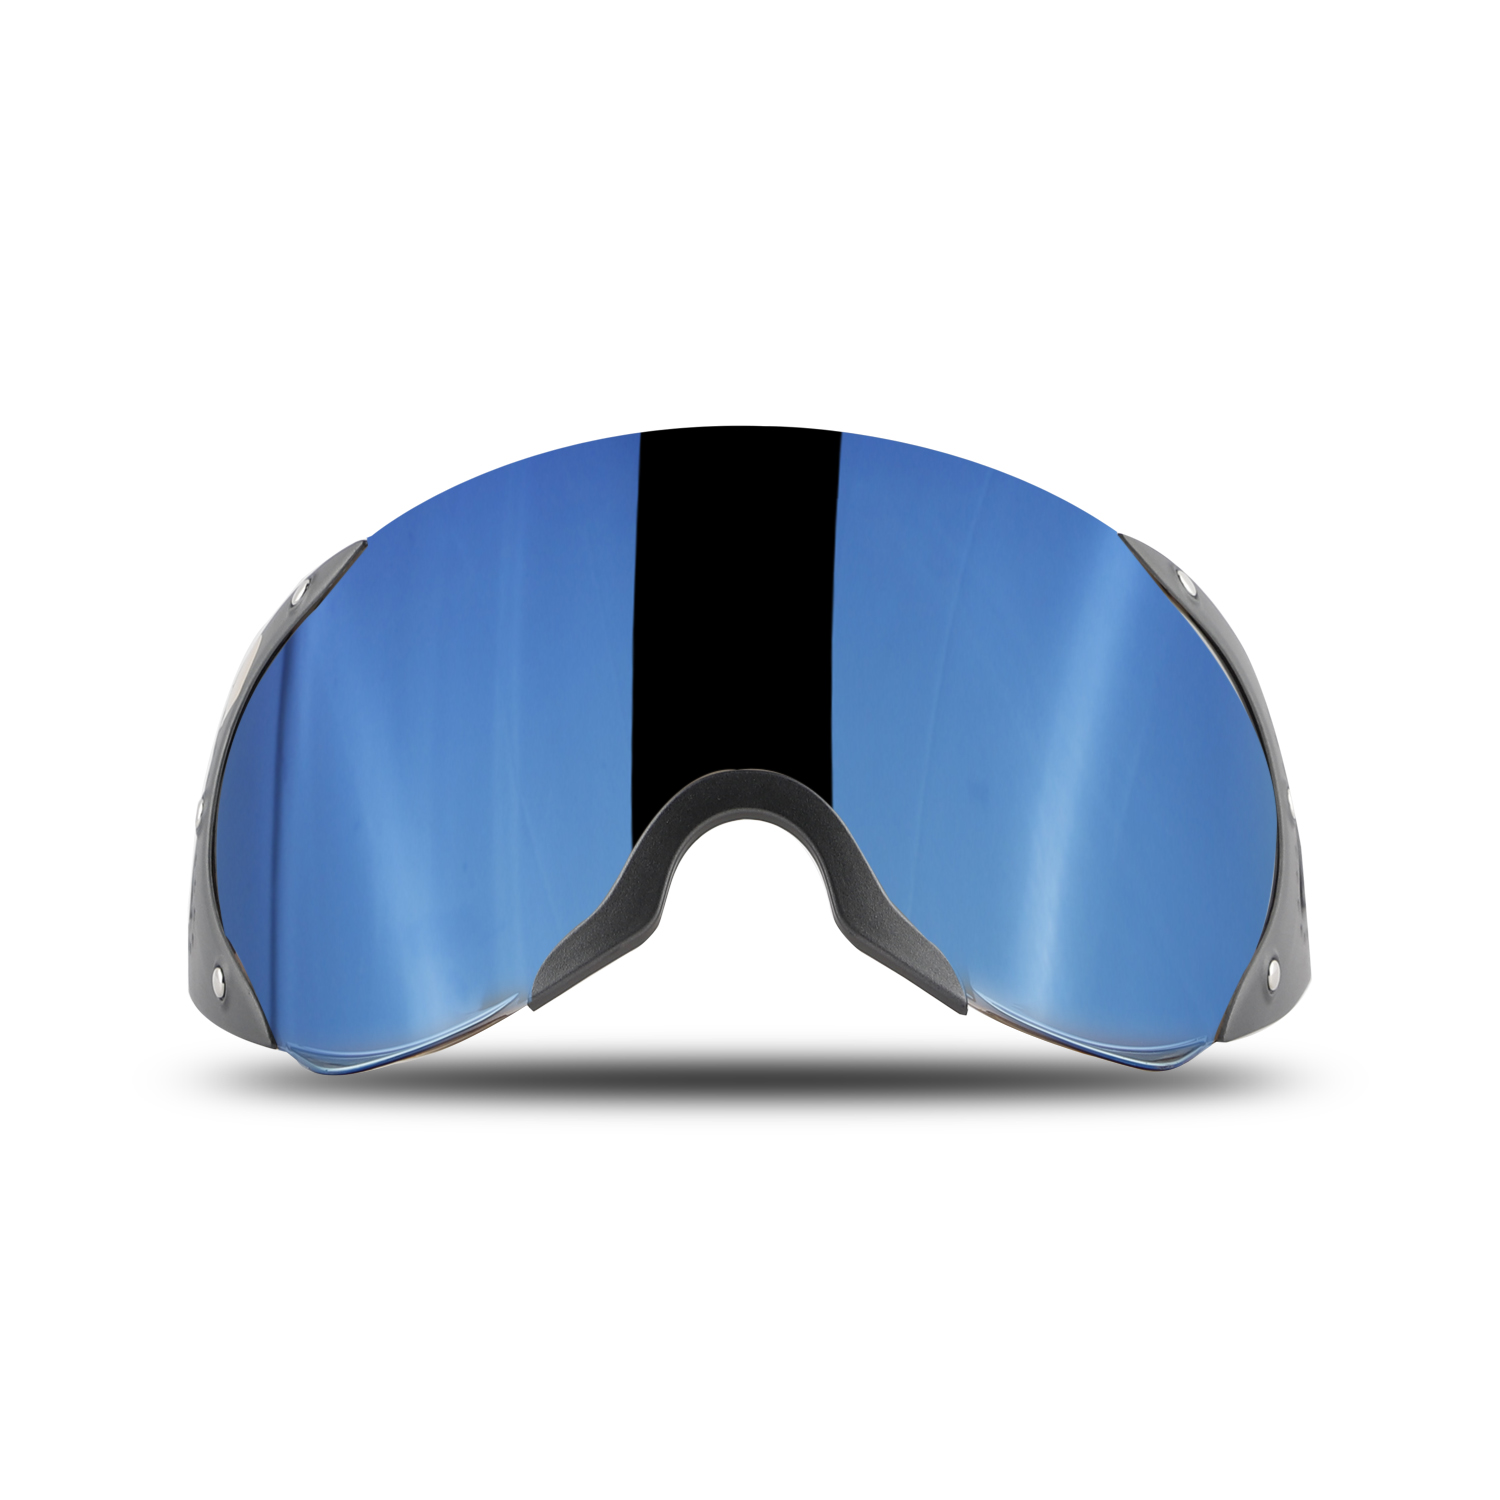 Steelbird SB-27 Helmet Visor Compatible For All SB-27 Model Helmets (Chrome Blue Visor)